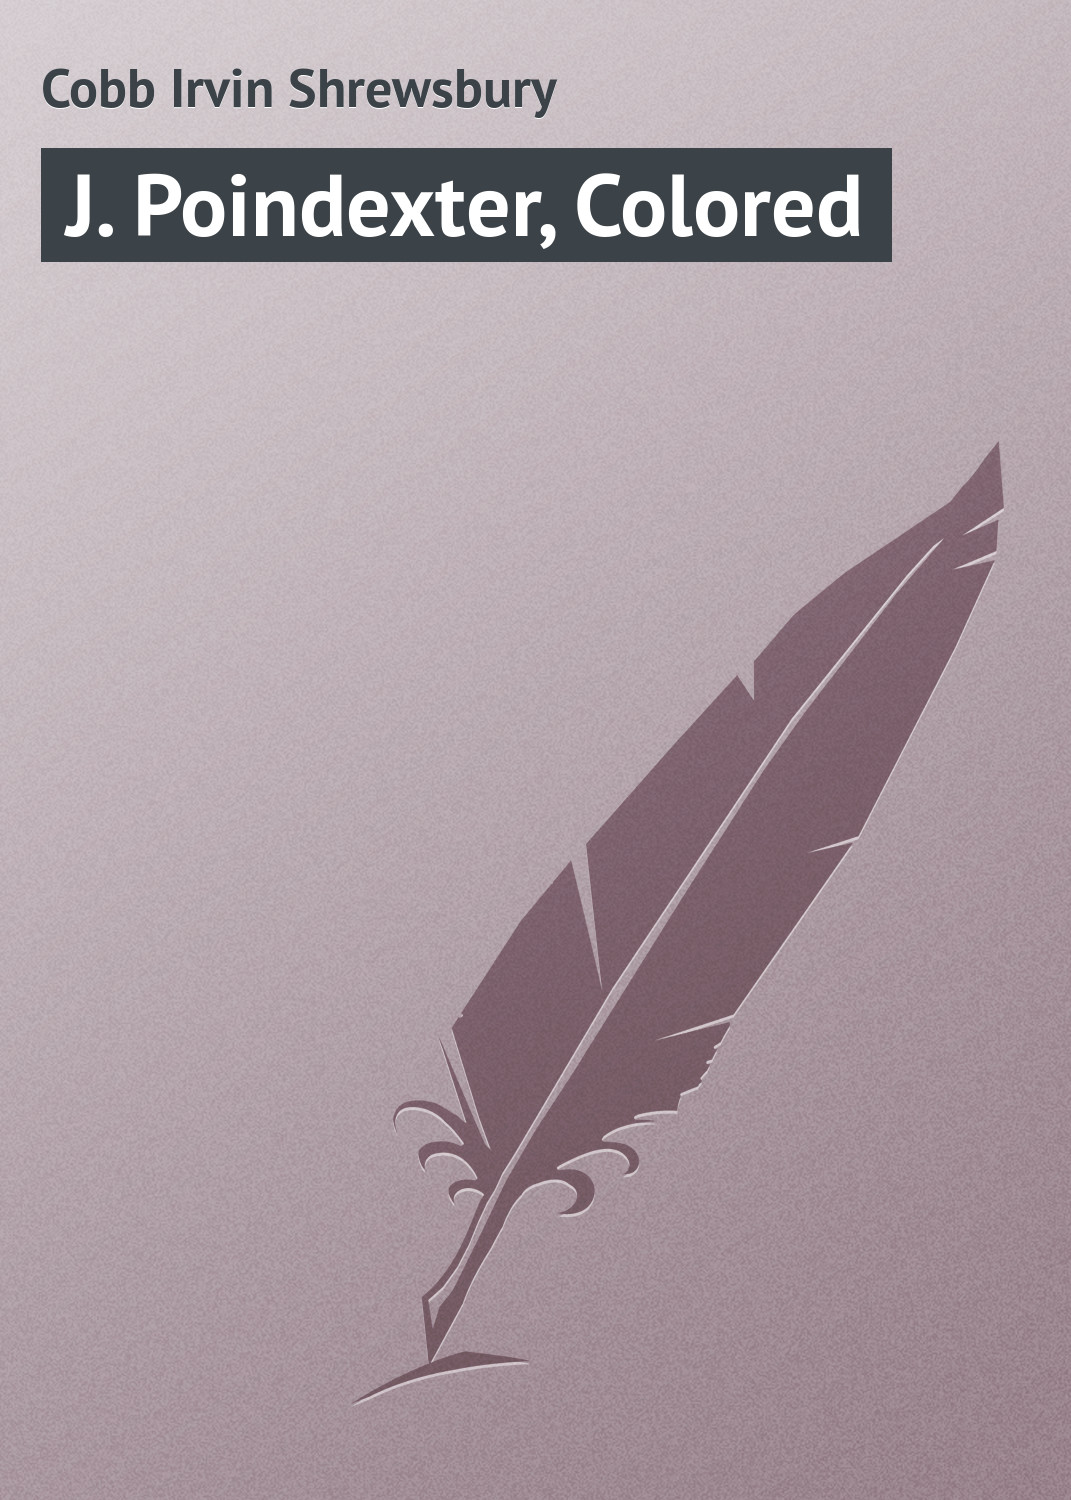 Книга J. Poindexter, Colored из серии , созданная Irvin Cobb, может относится к жанру Зарубежная классика. Стоимость электронной книги J. Poindexter, Colored с идентификатором 23157851 составляет 5.99 руб.